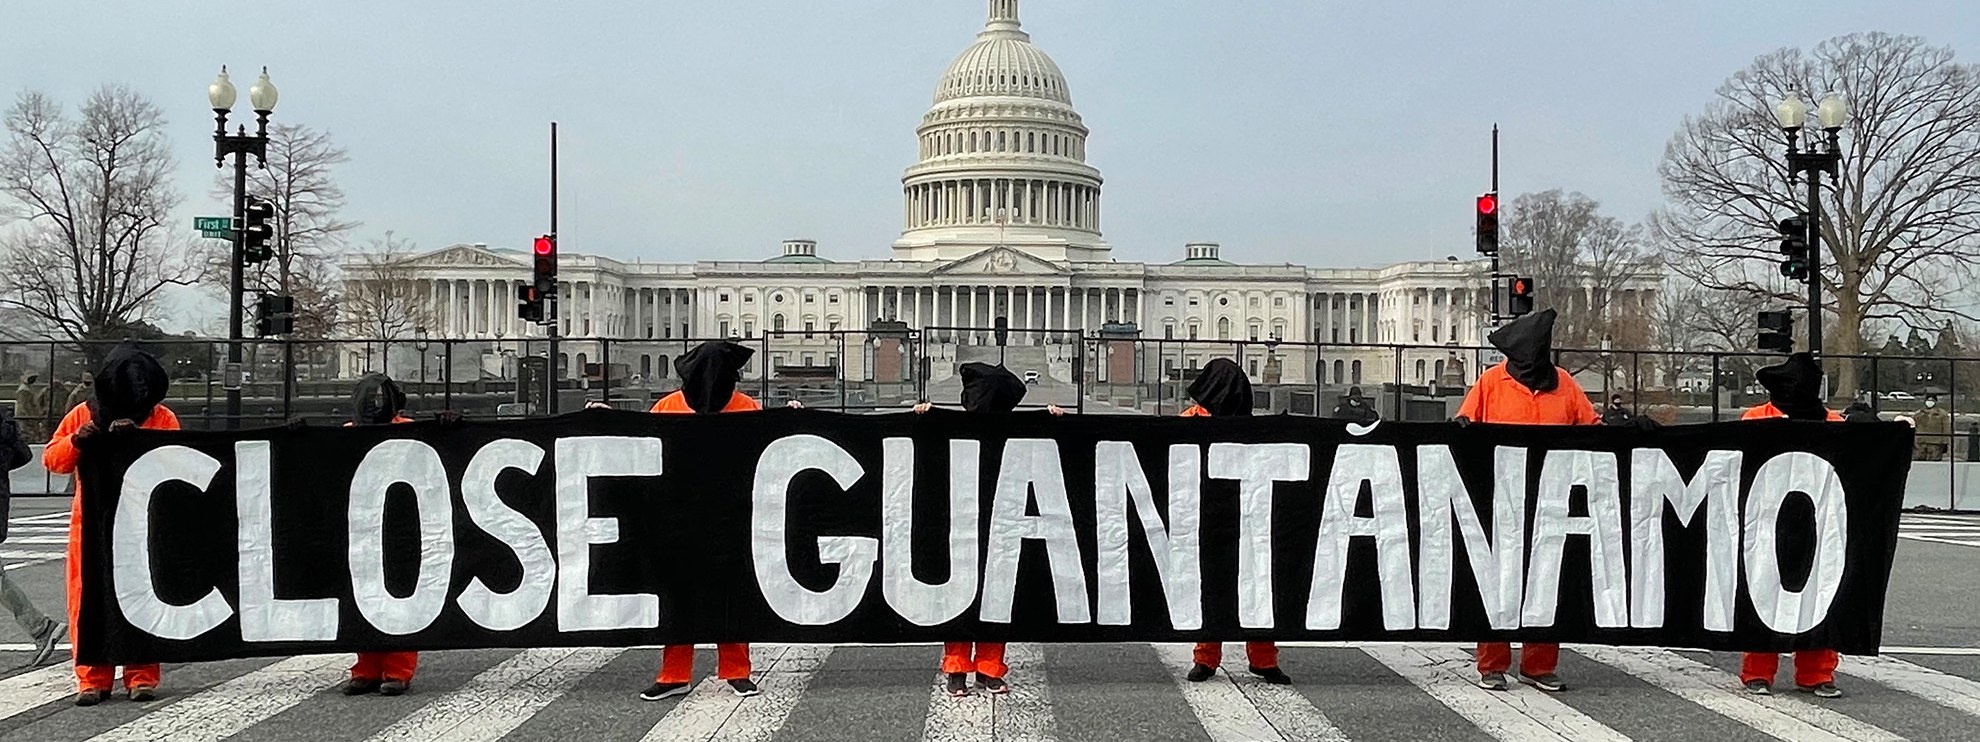 Manifestation devant la Chambre des représentants à Washington D.C. pour marquer le 19e anniversaire de Guantánamo, 11 janvier 2021 © Amnesty International